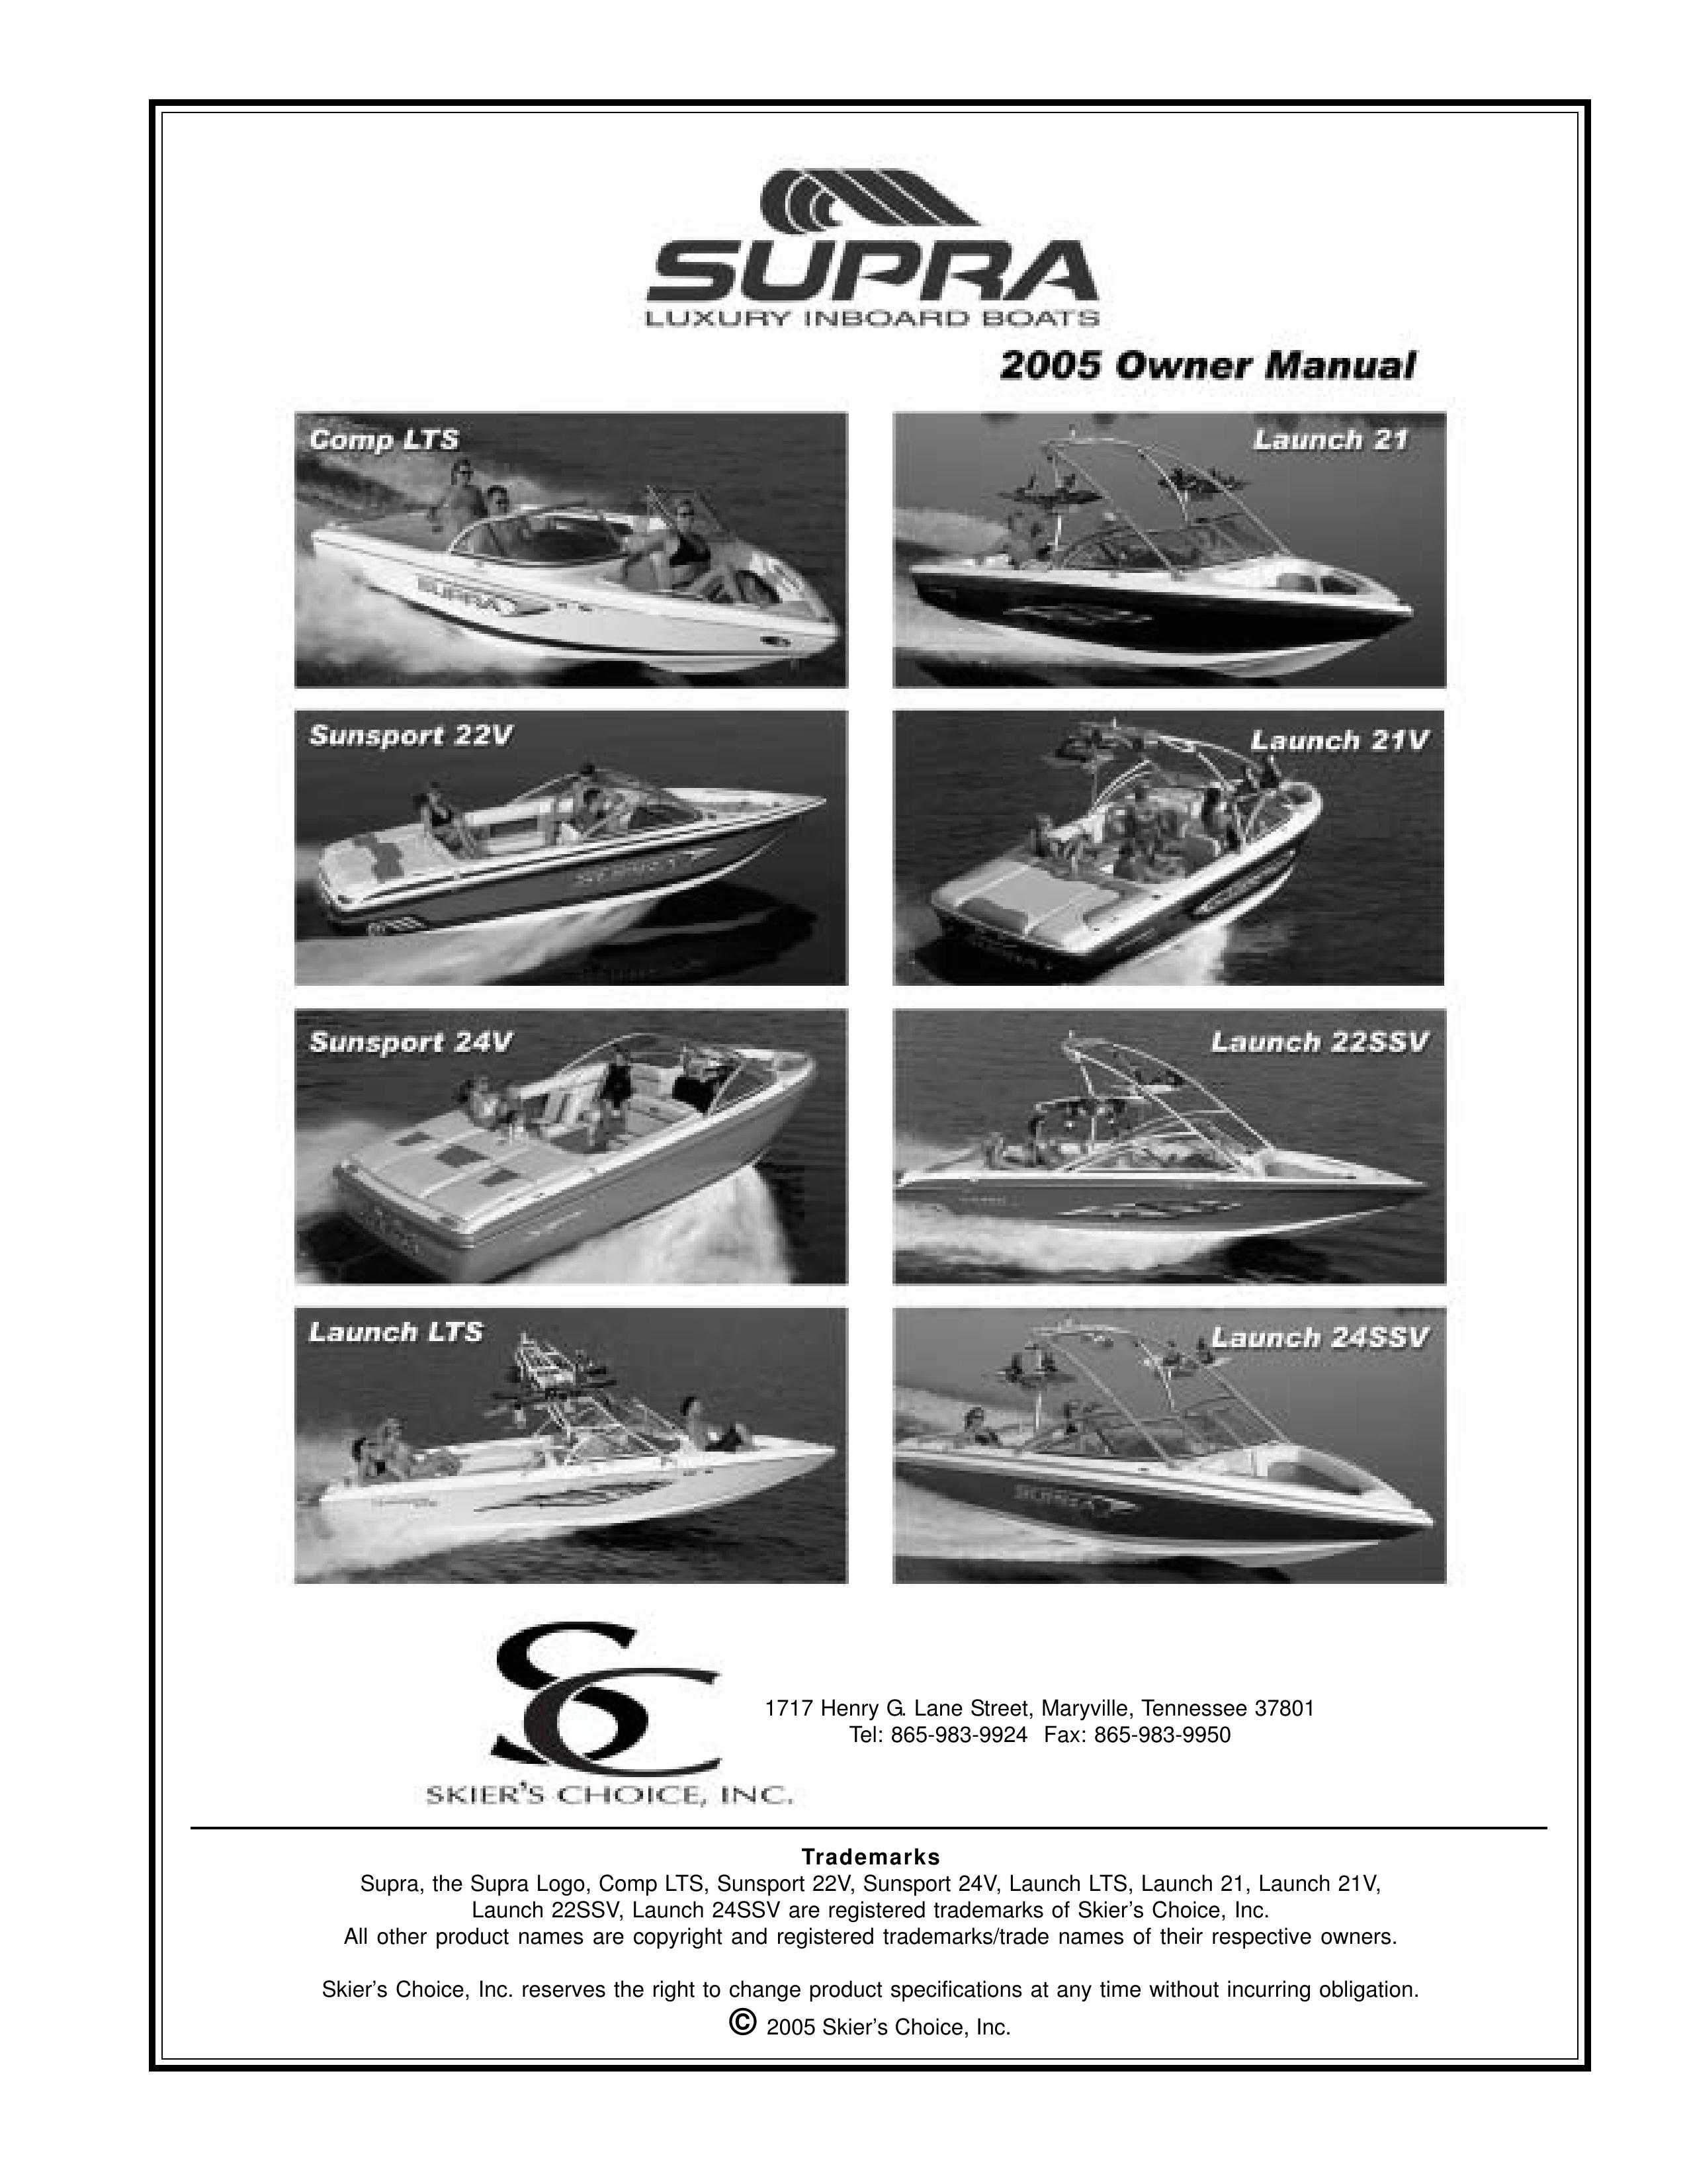 Supra SUNSPORT 24V Boat User Manual